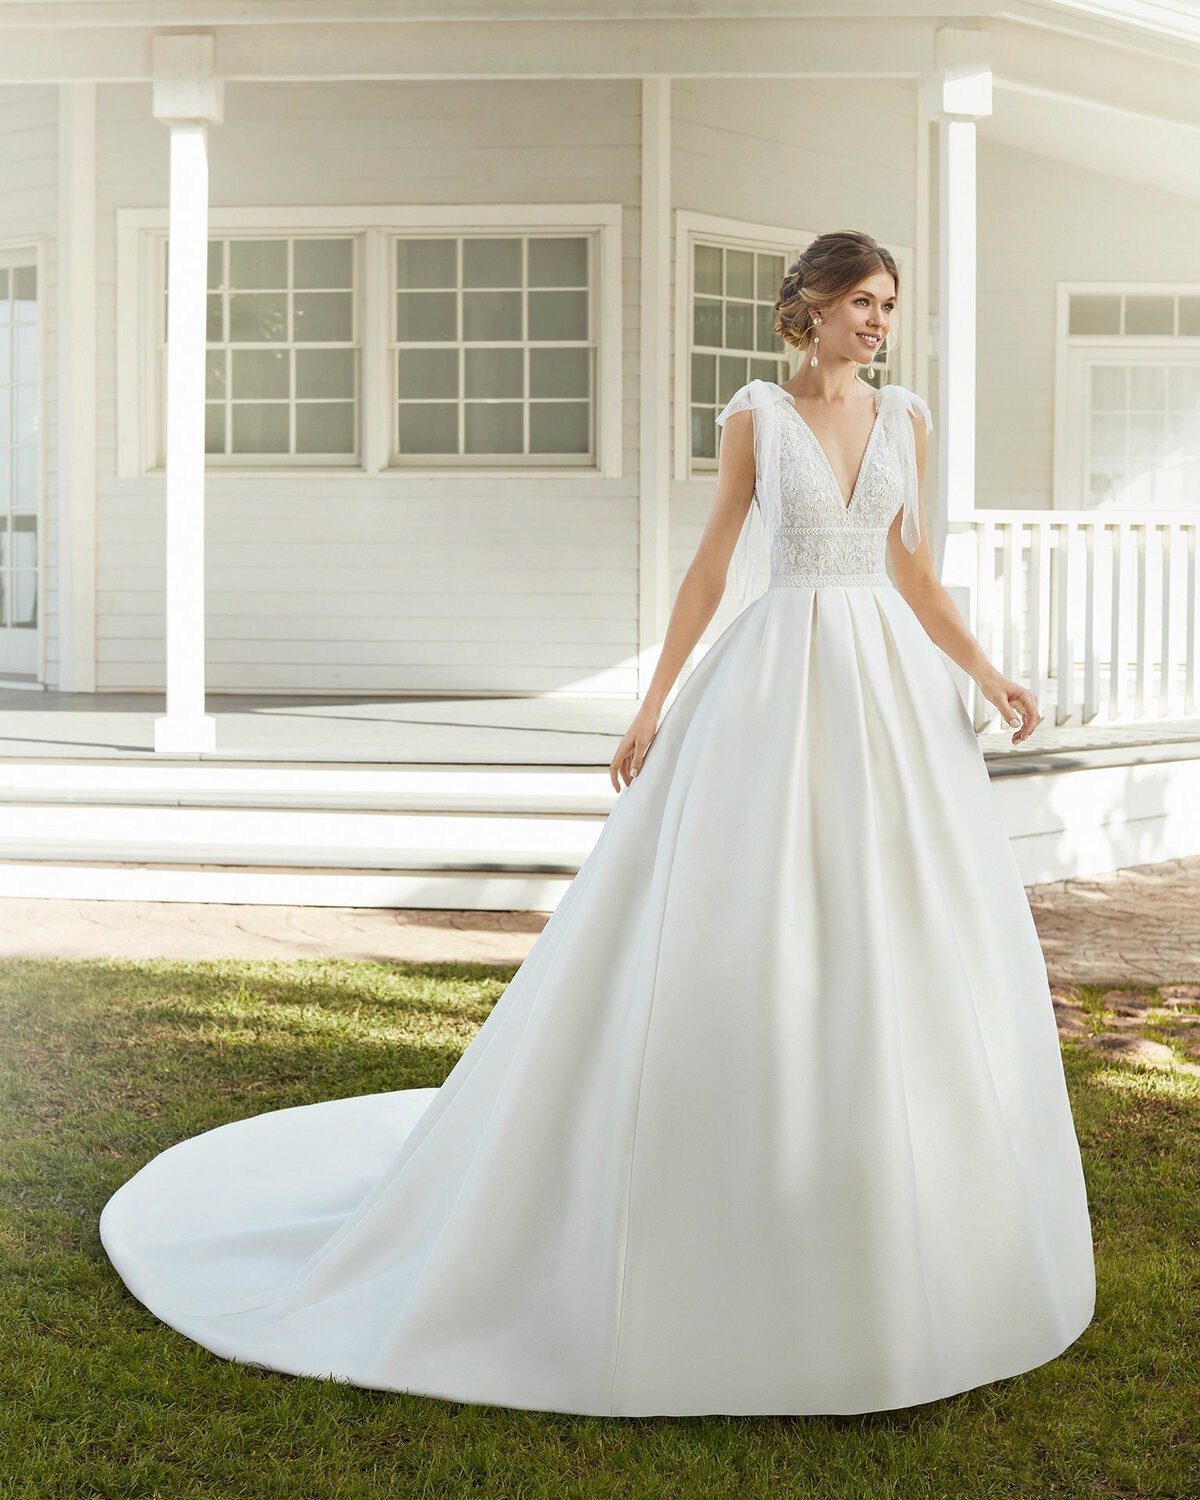 CARIBE - abito da sposa collezione 2020 - Rosa Clarà